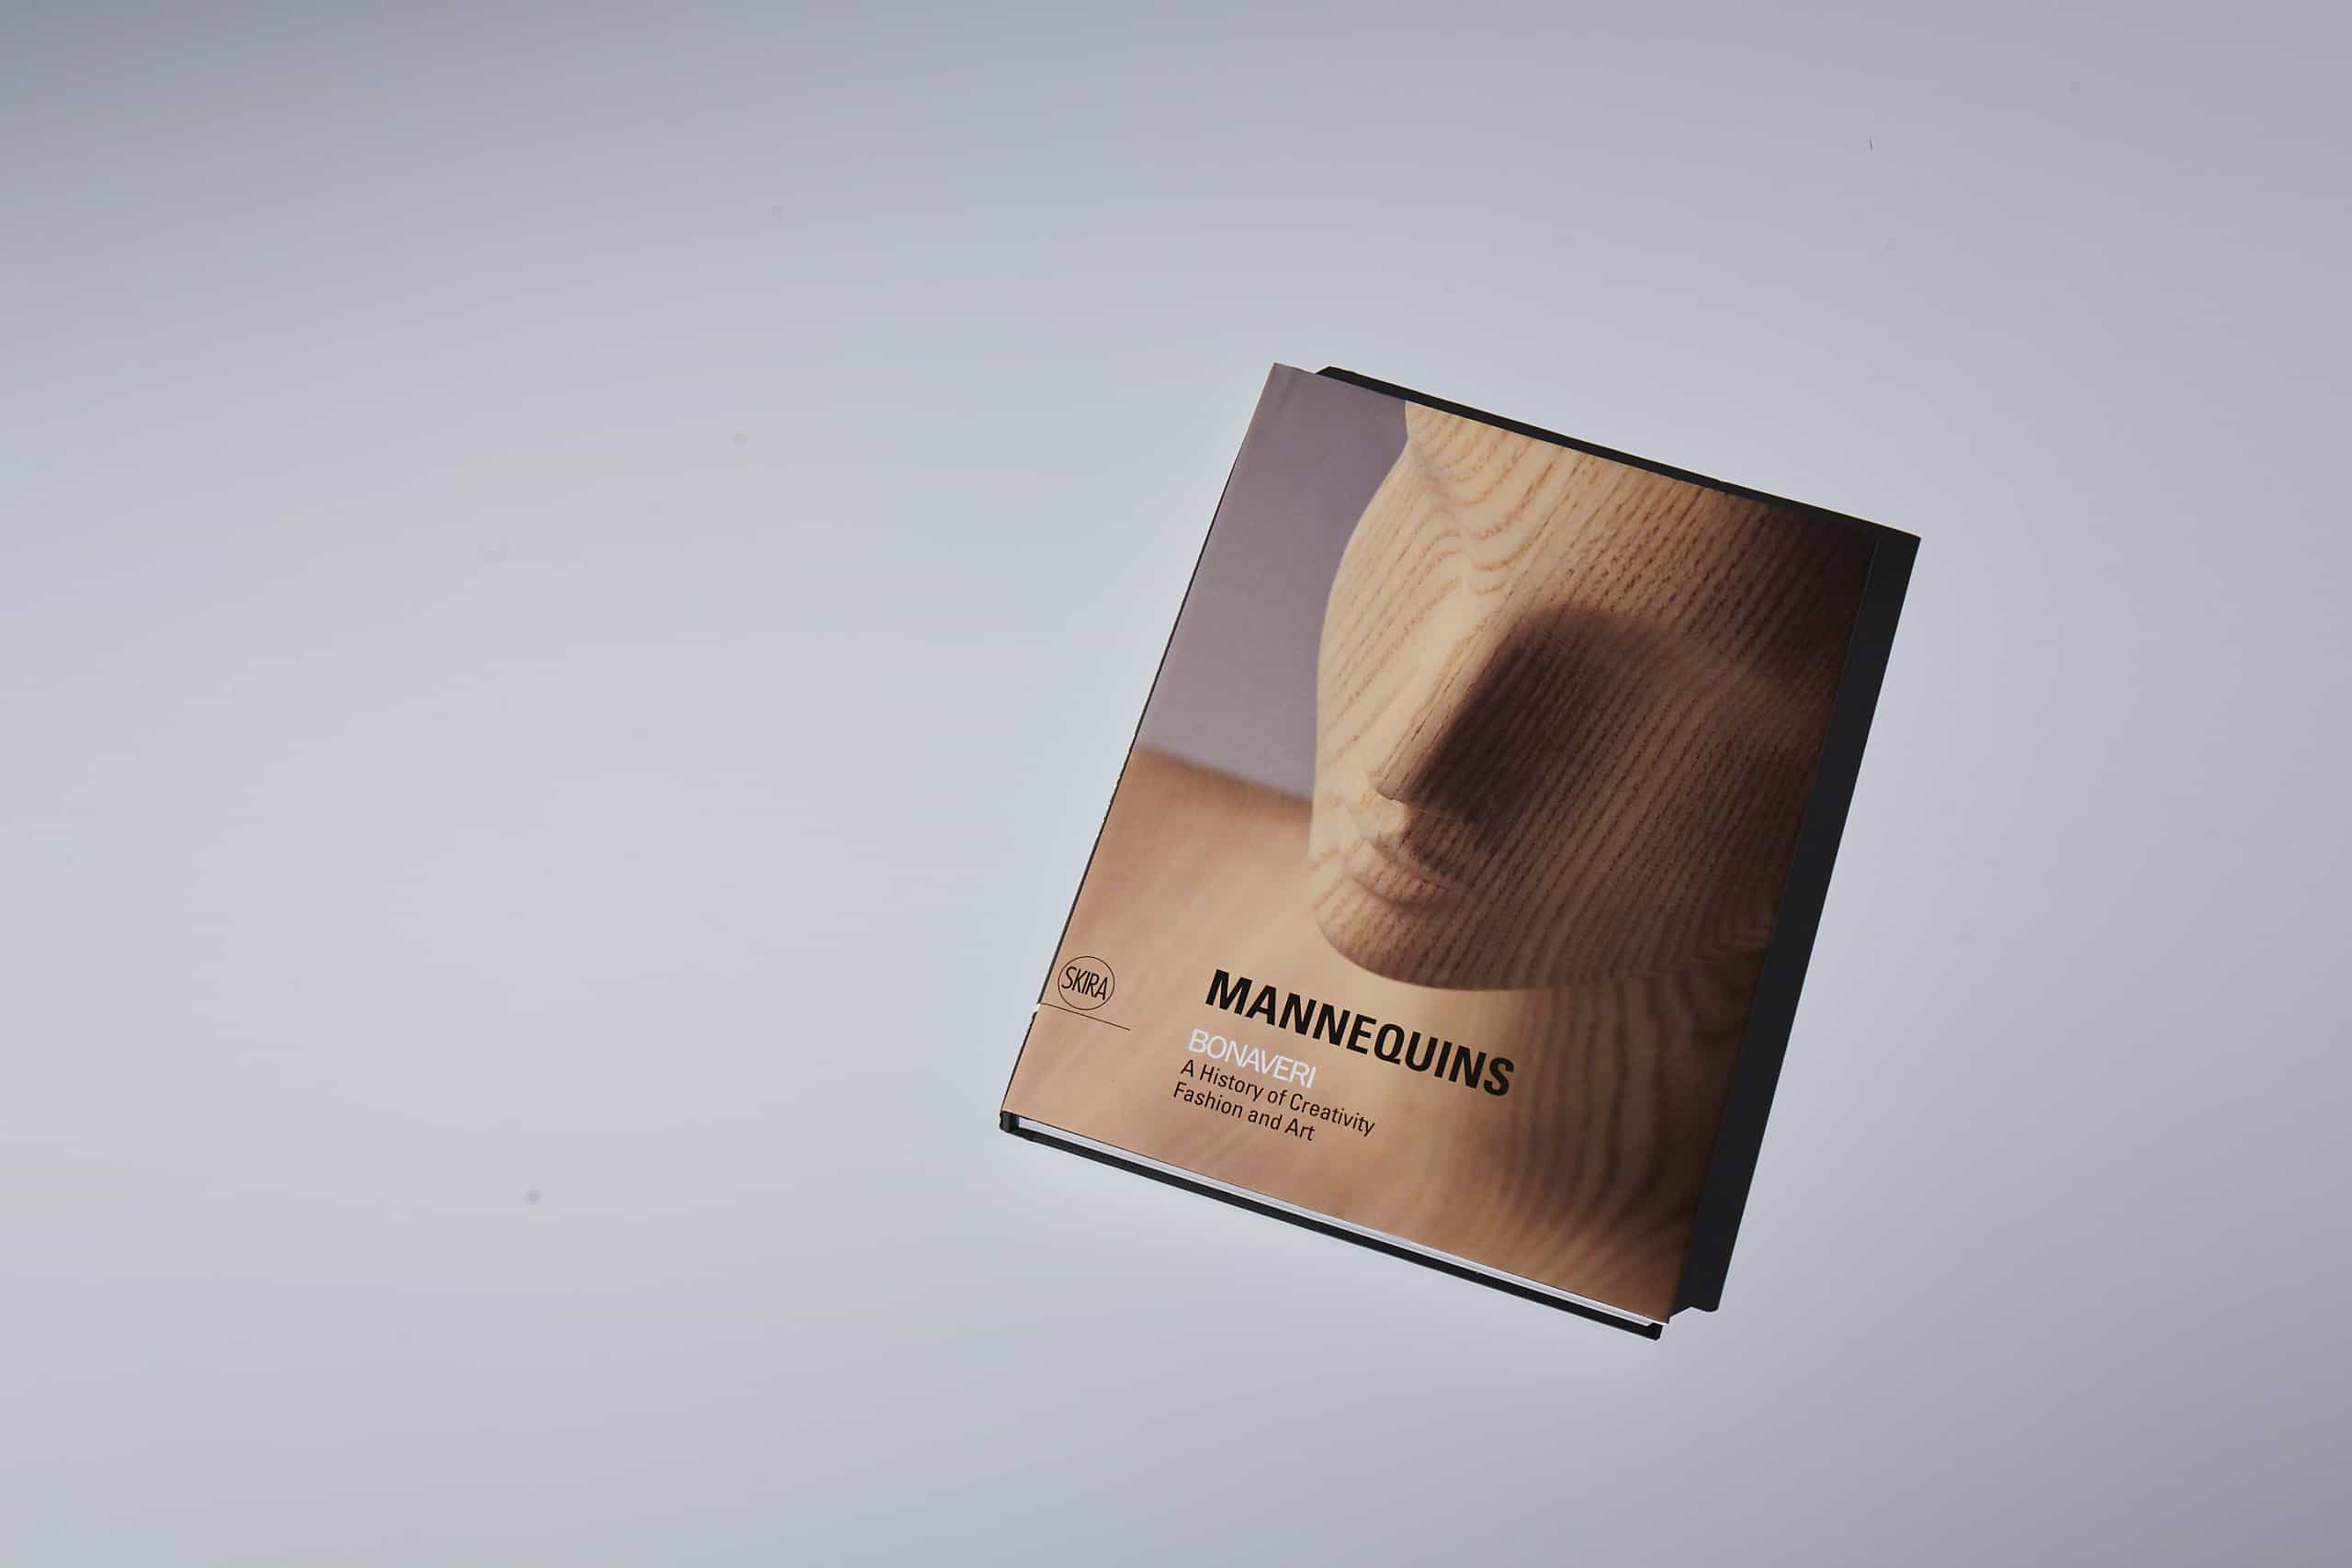 The Bonaveri Mannequin Book